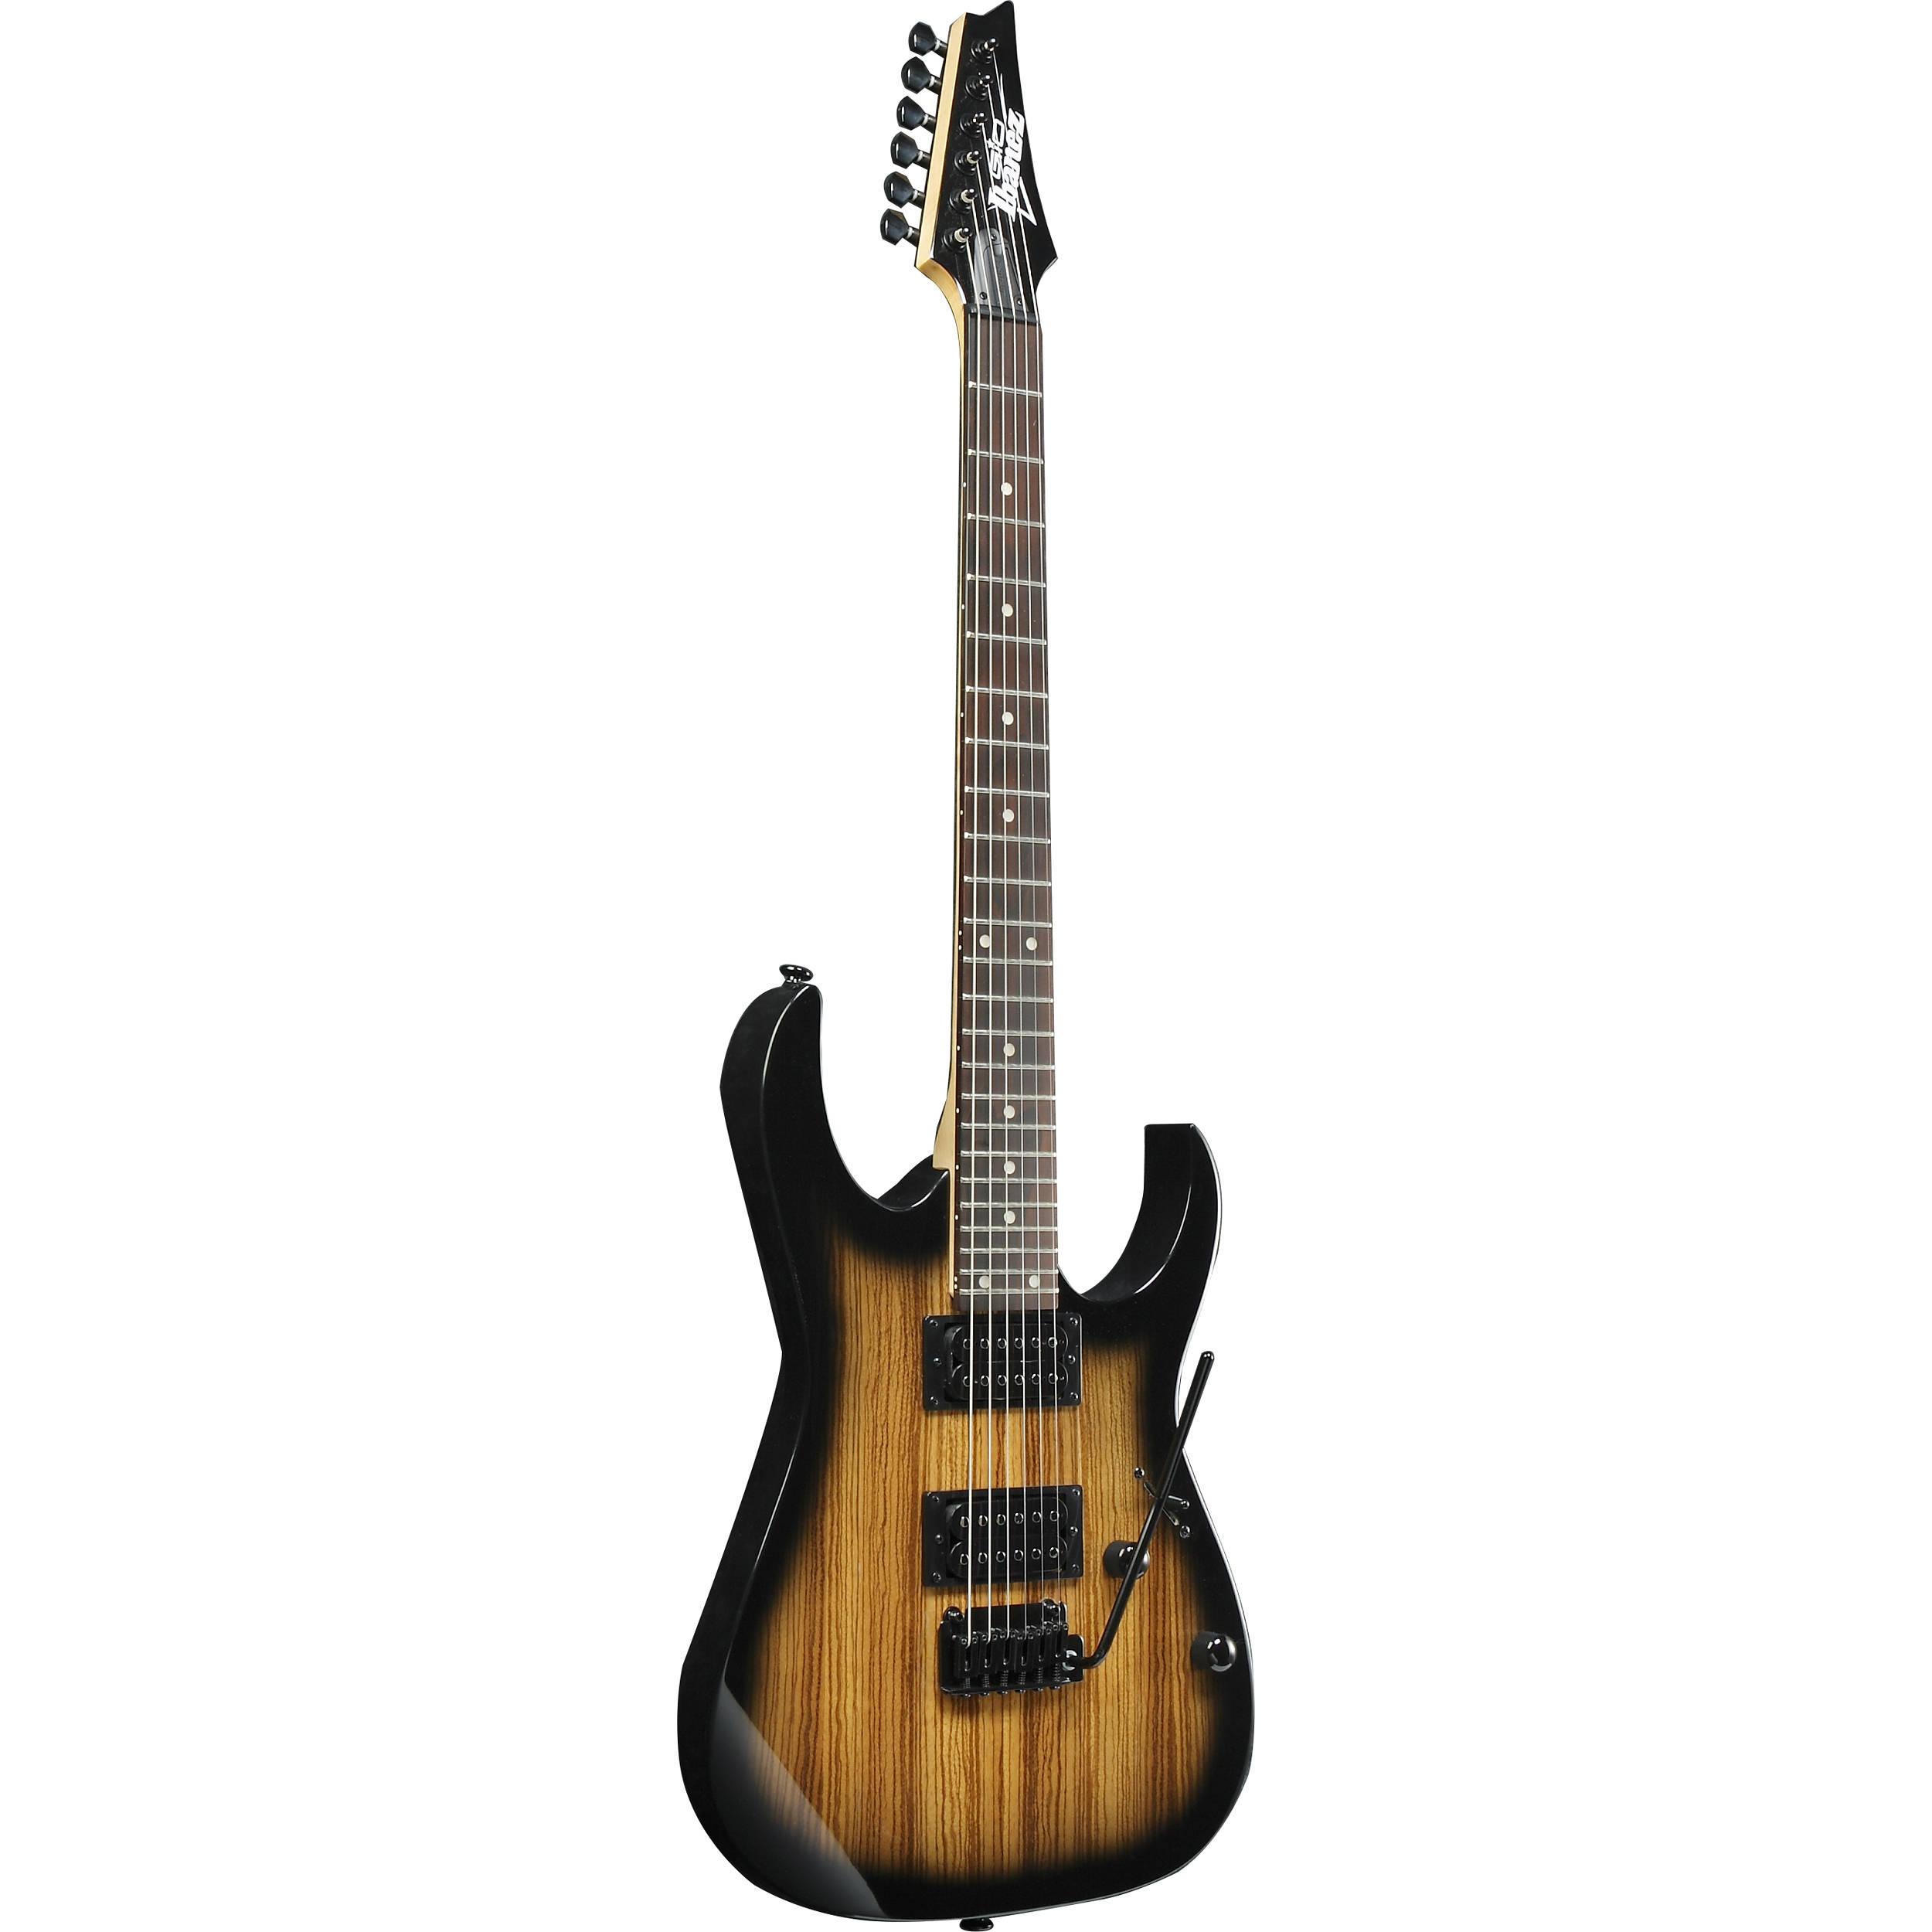 Ibañez - Guitarra Eléctrica RG, Color: Natural Sombreado Mod.GRG120ZW-NGT_37